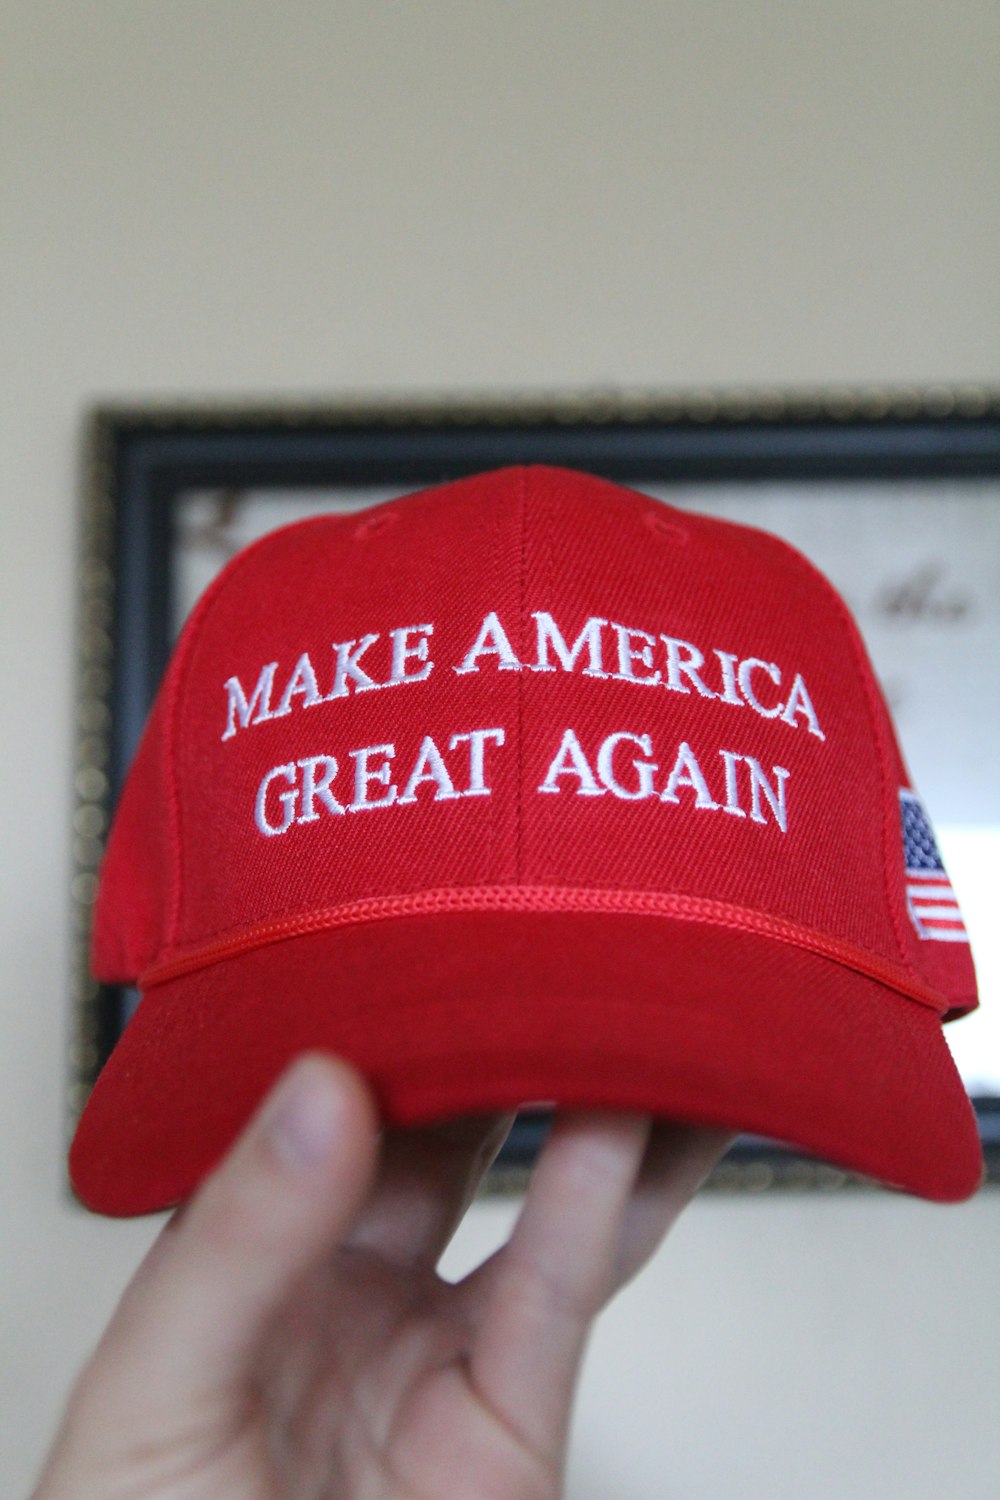 미국을 다시 위대하게 만들라는 빨간 모자